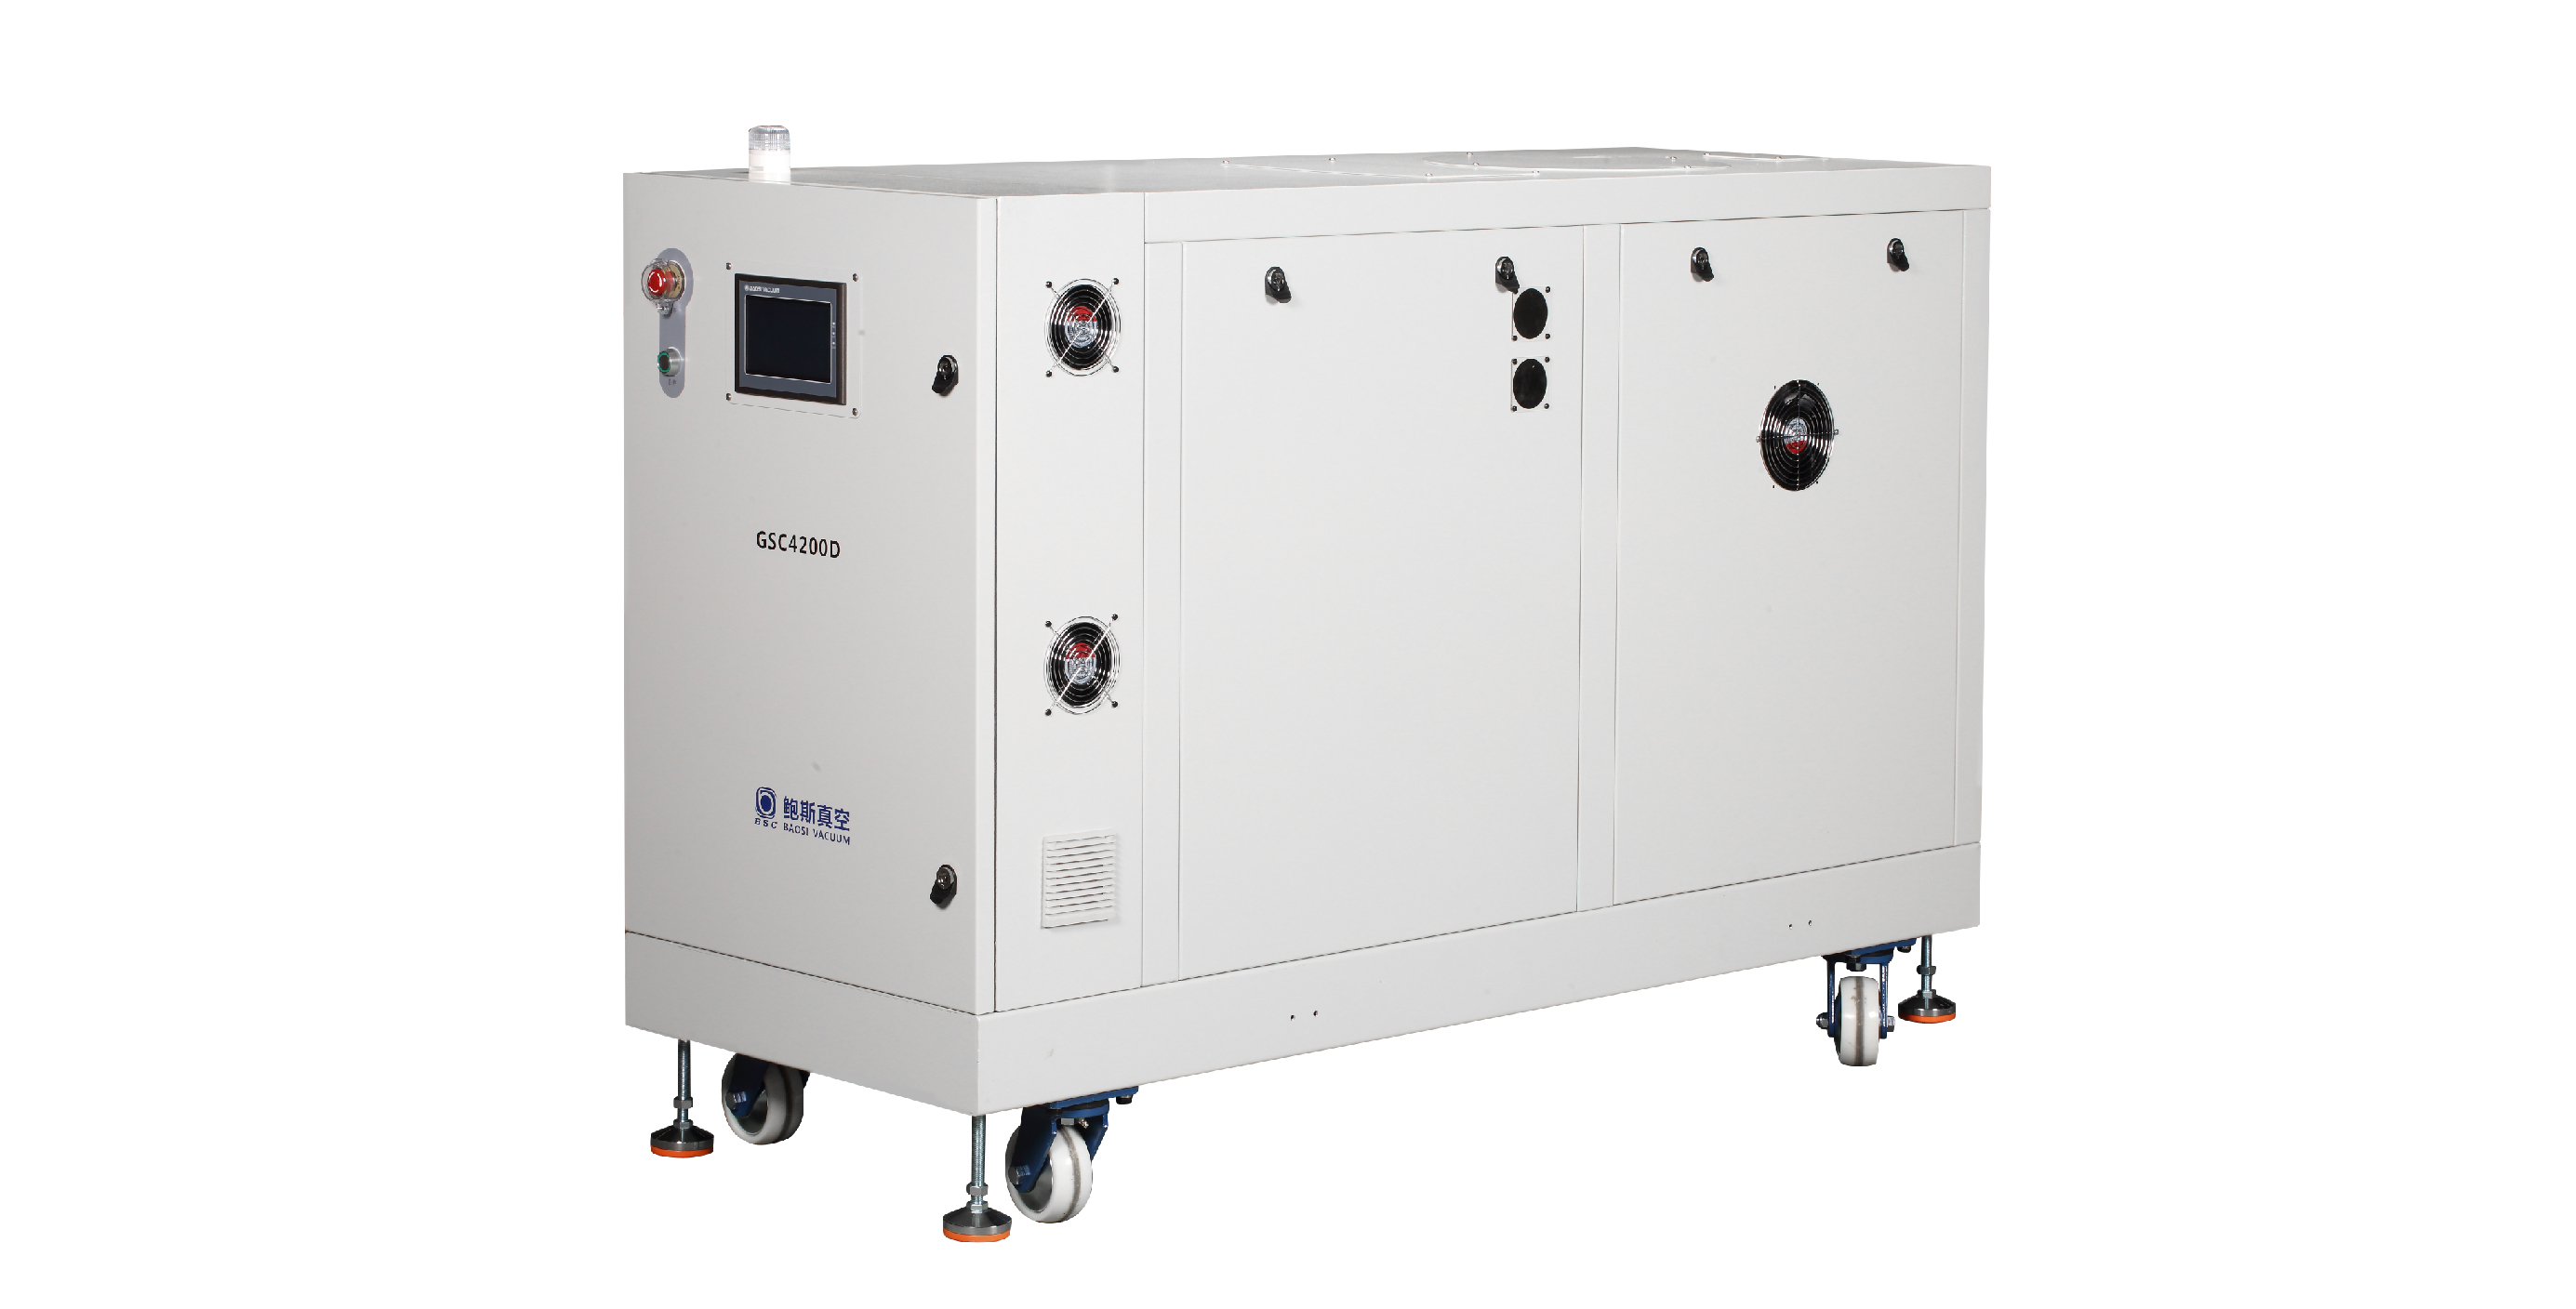 鲍斯GSC800/4200D螺杆干泵真空泵组：光伏行业的优选真空解决方案